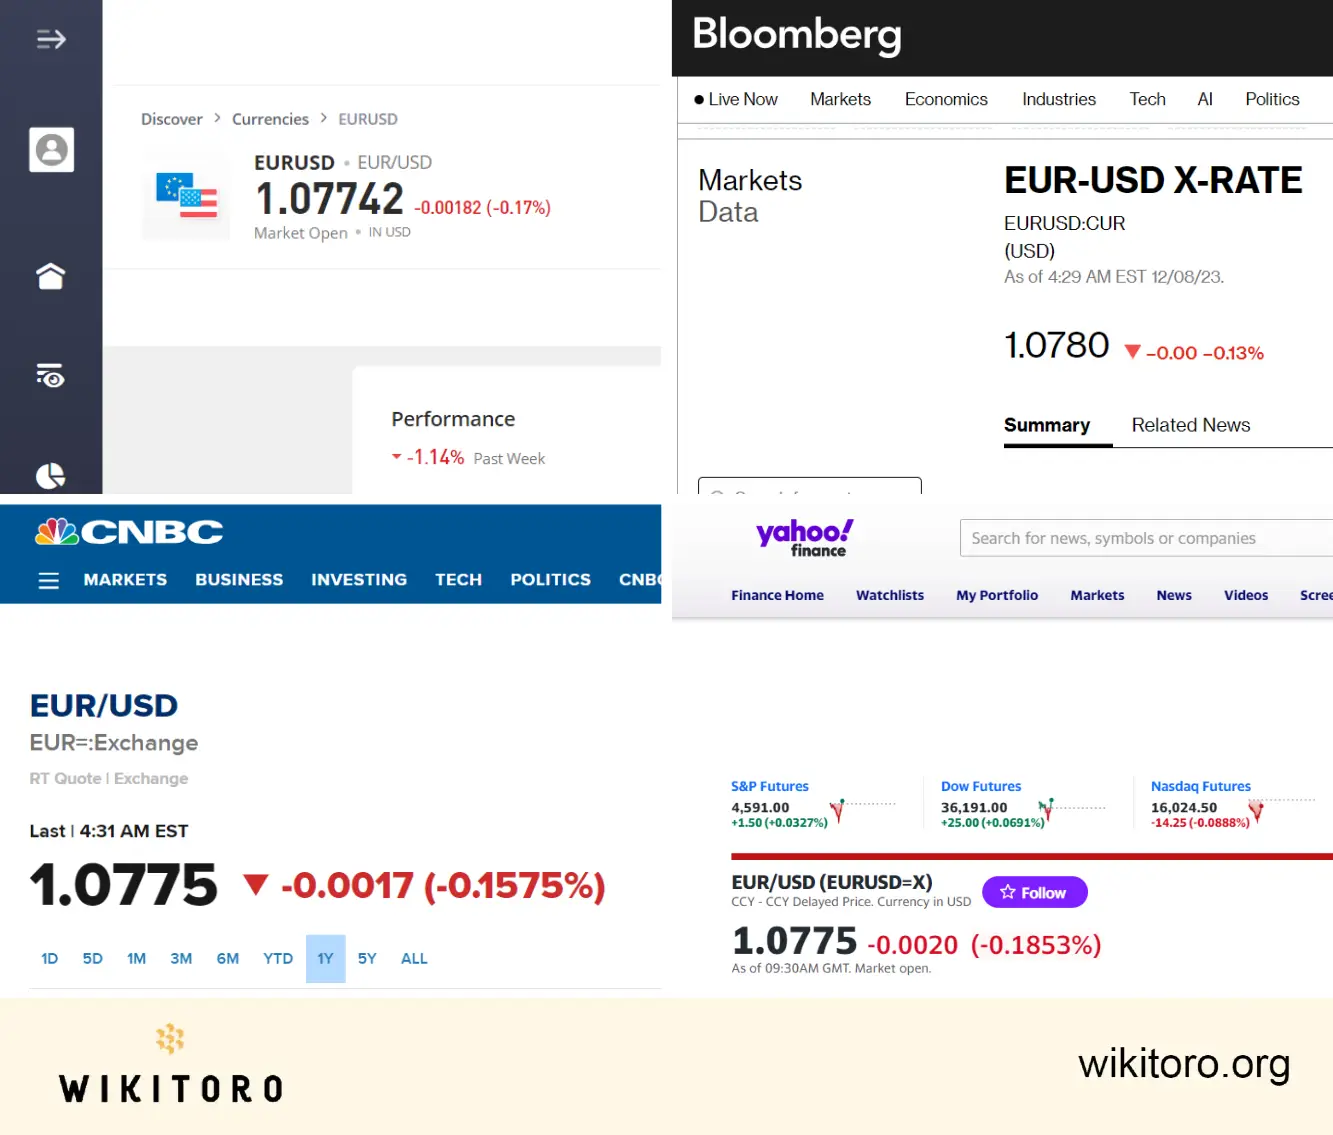 Porovnání tržních dat eToro s daty Bloomberg, CNBC a Yahoo